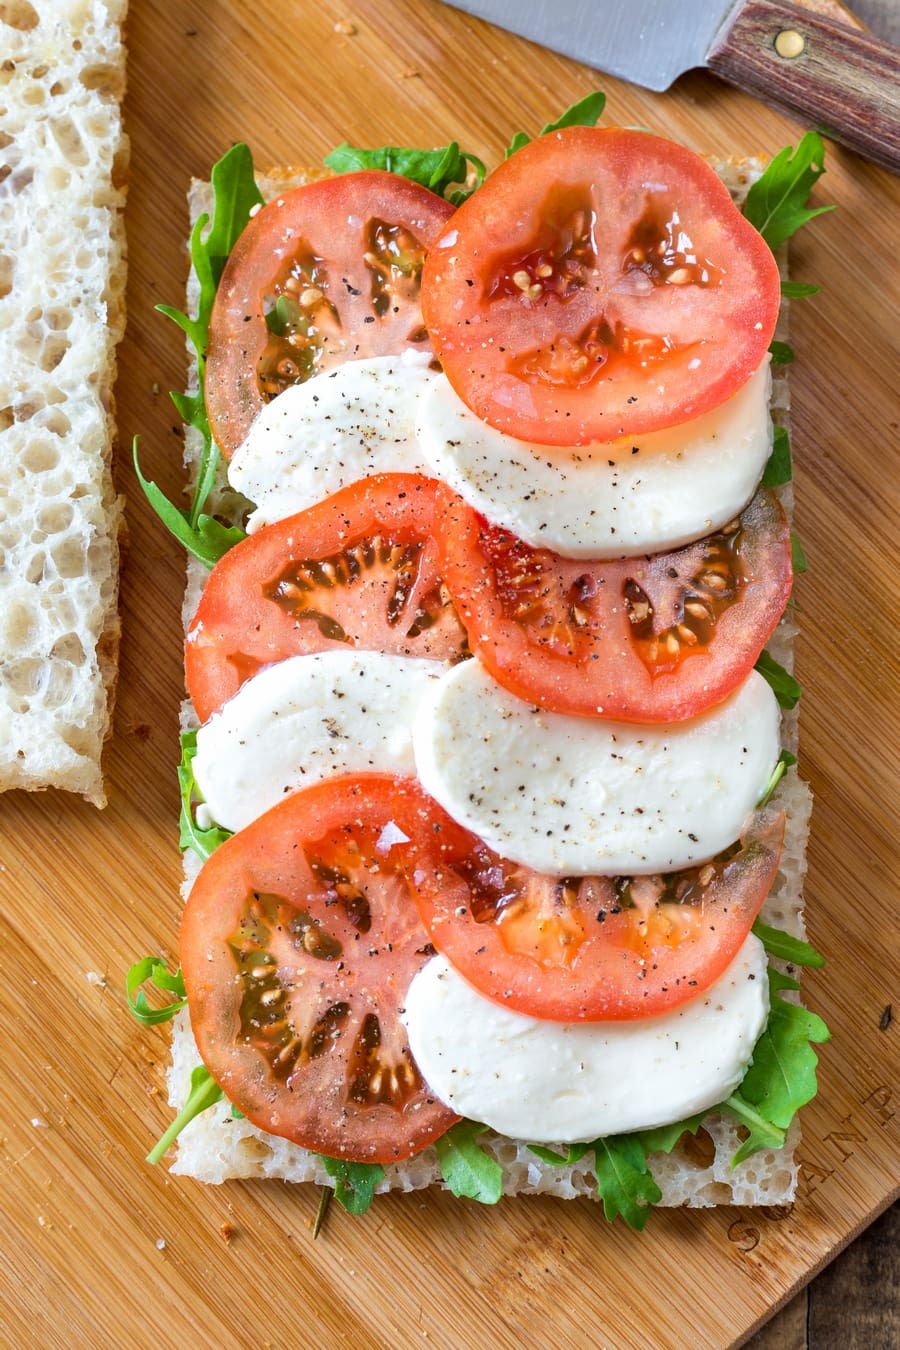 Caprese tomato and mozzarella slices on focaccia bread with rocket salad.